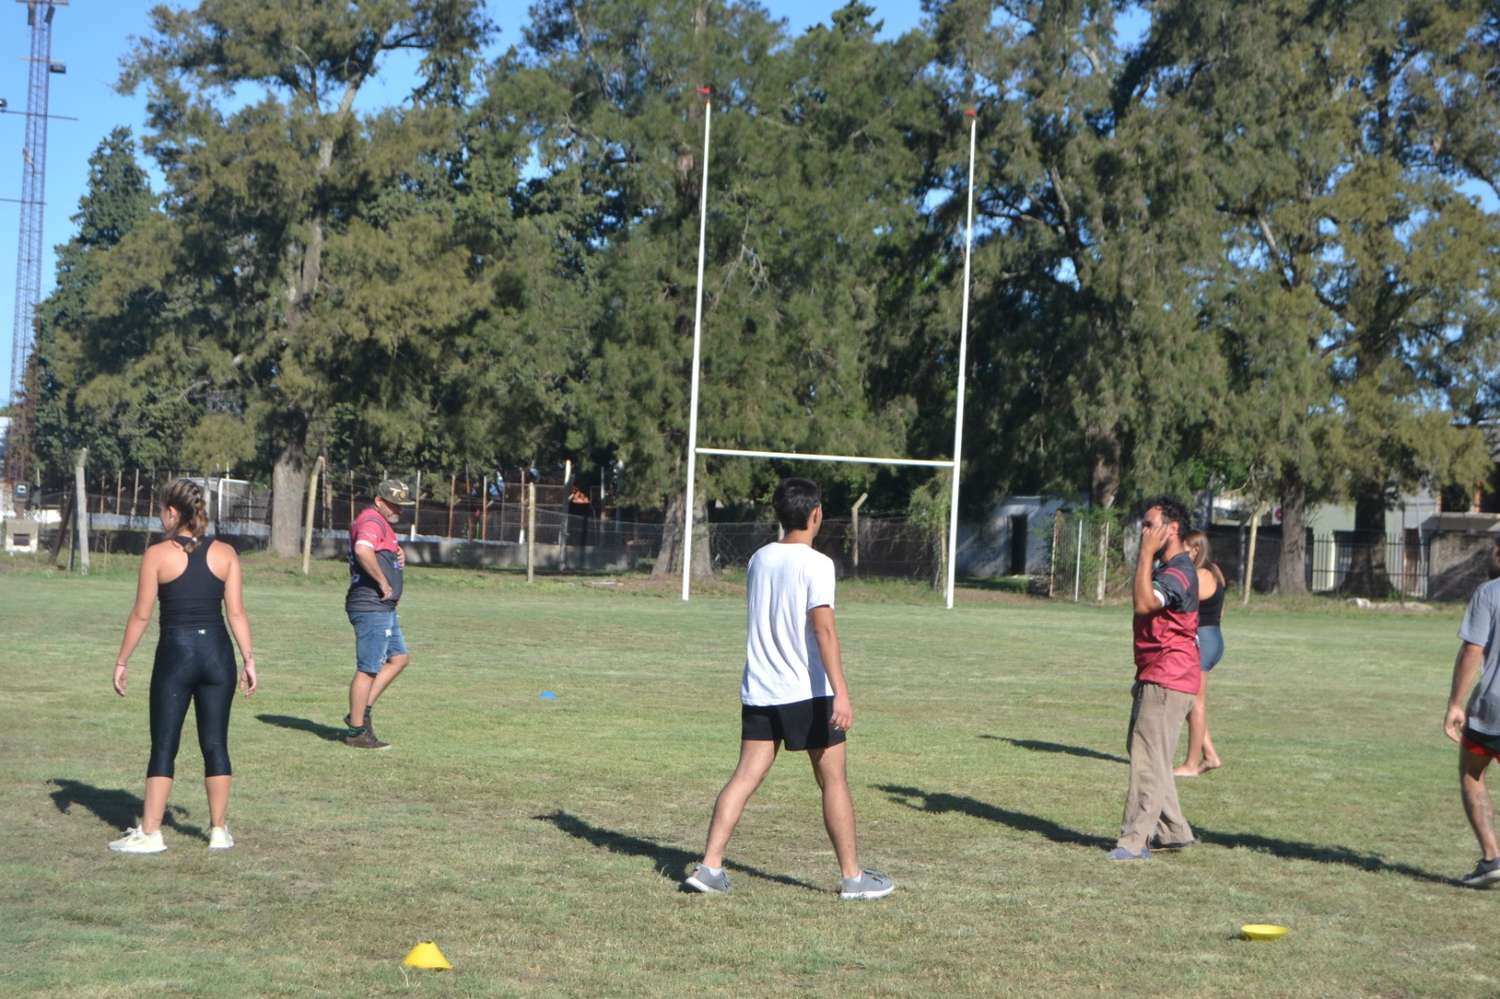 Un notable entusiasmo hay en Gualeguay Central por la disciplina del rugby.